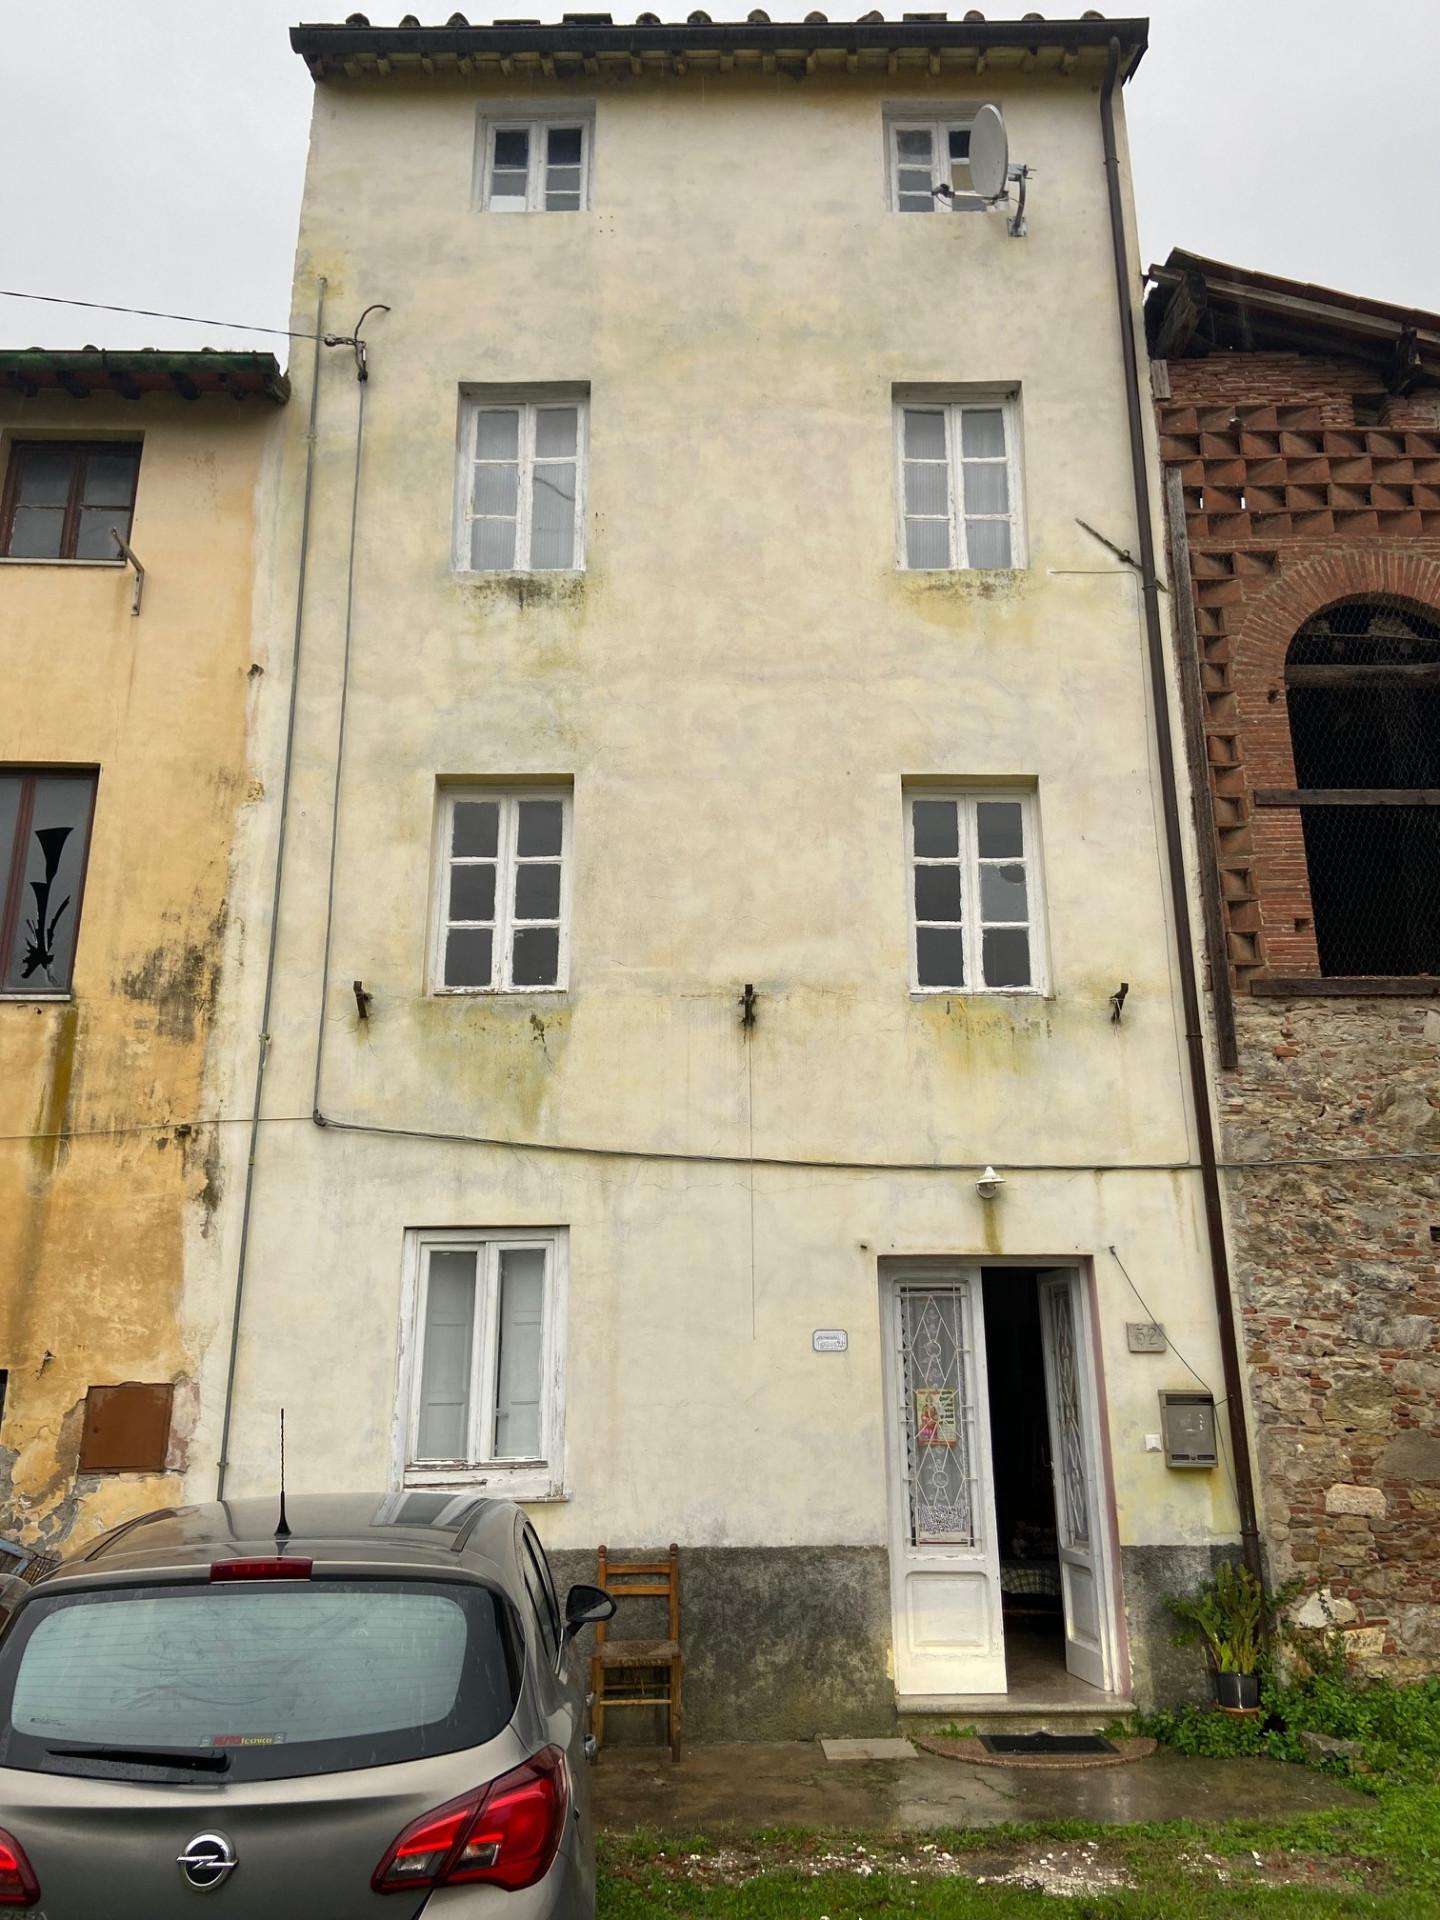 Palazzo - Stabile in Vendita a Lucca Montuolo,